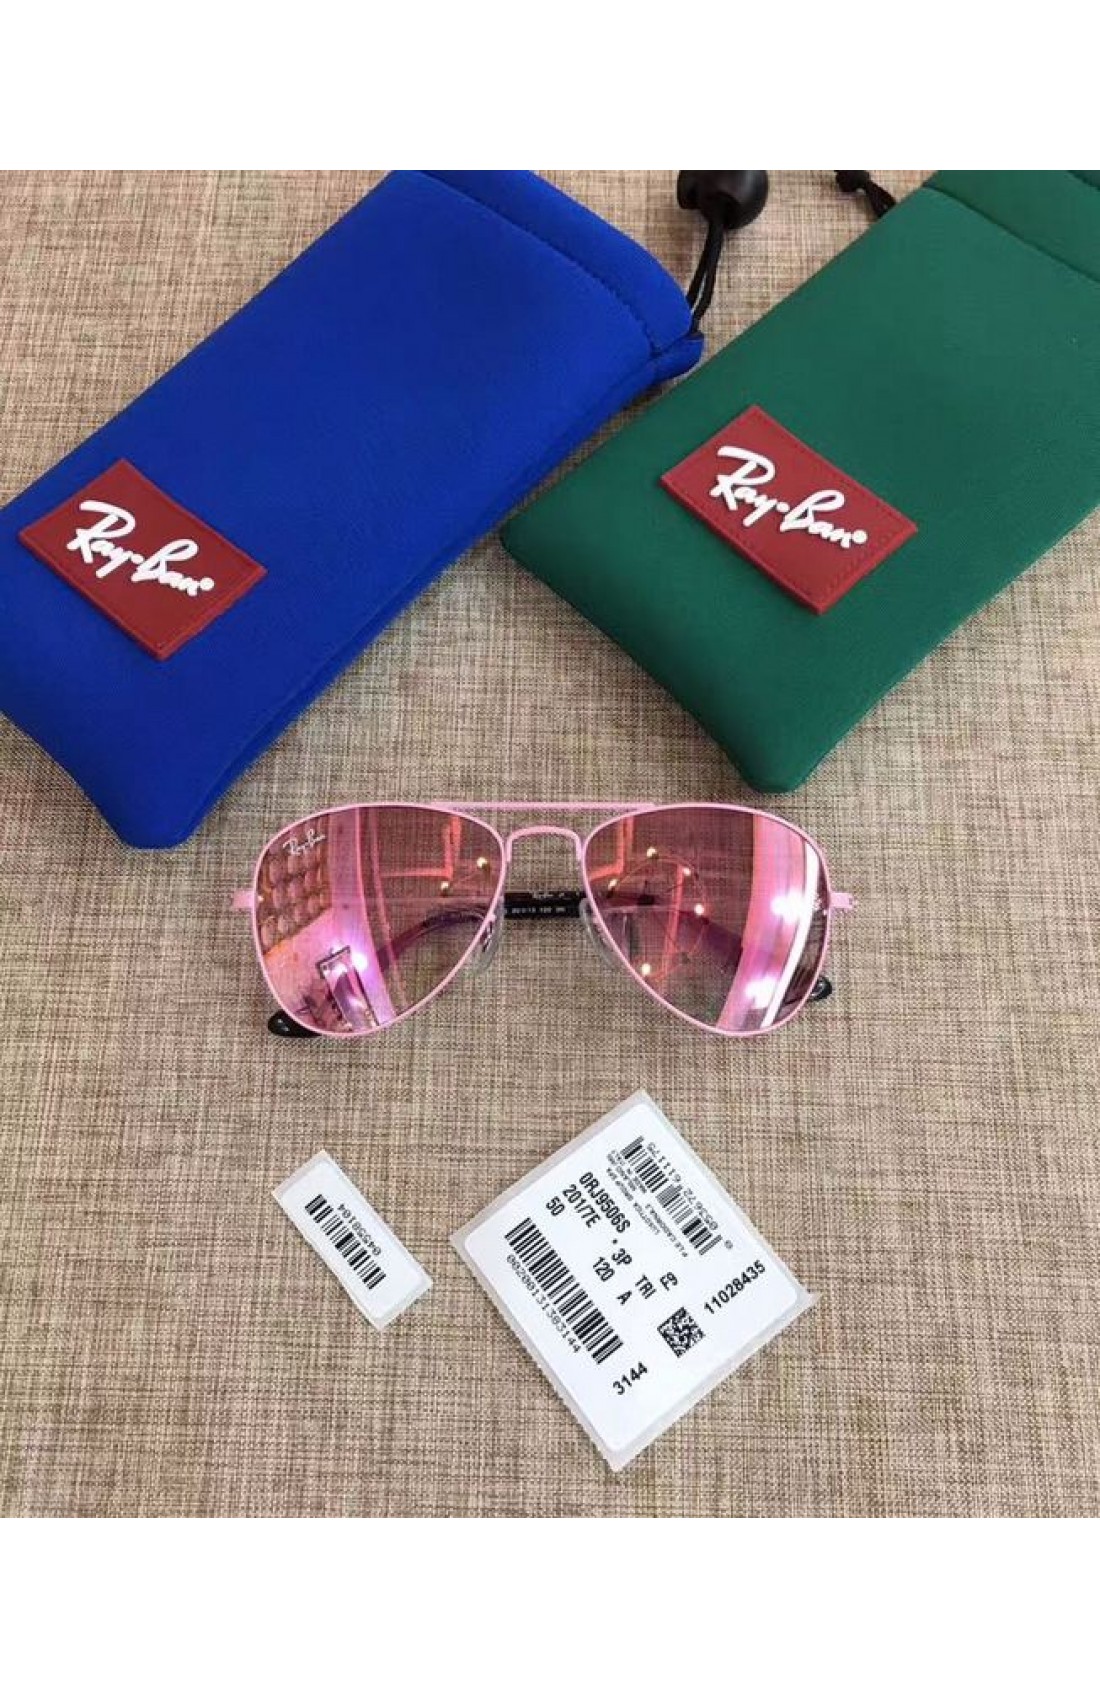 ray ban women's polarized aviator sunglasses